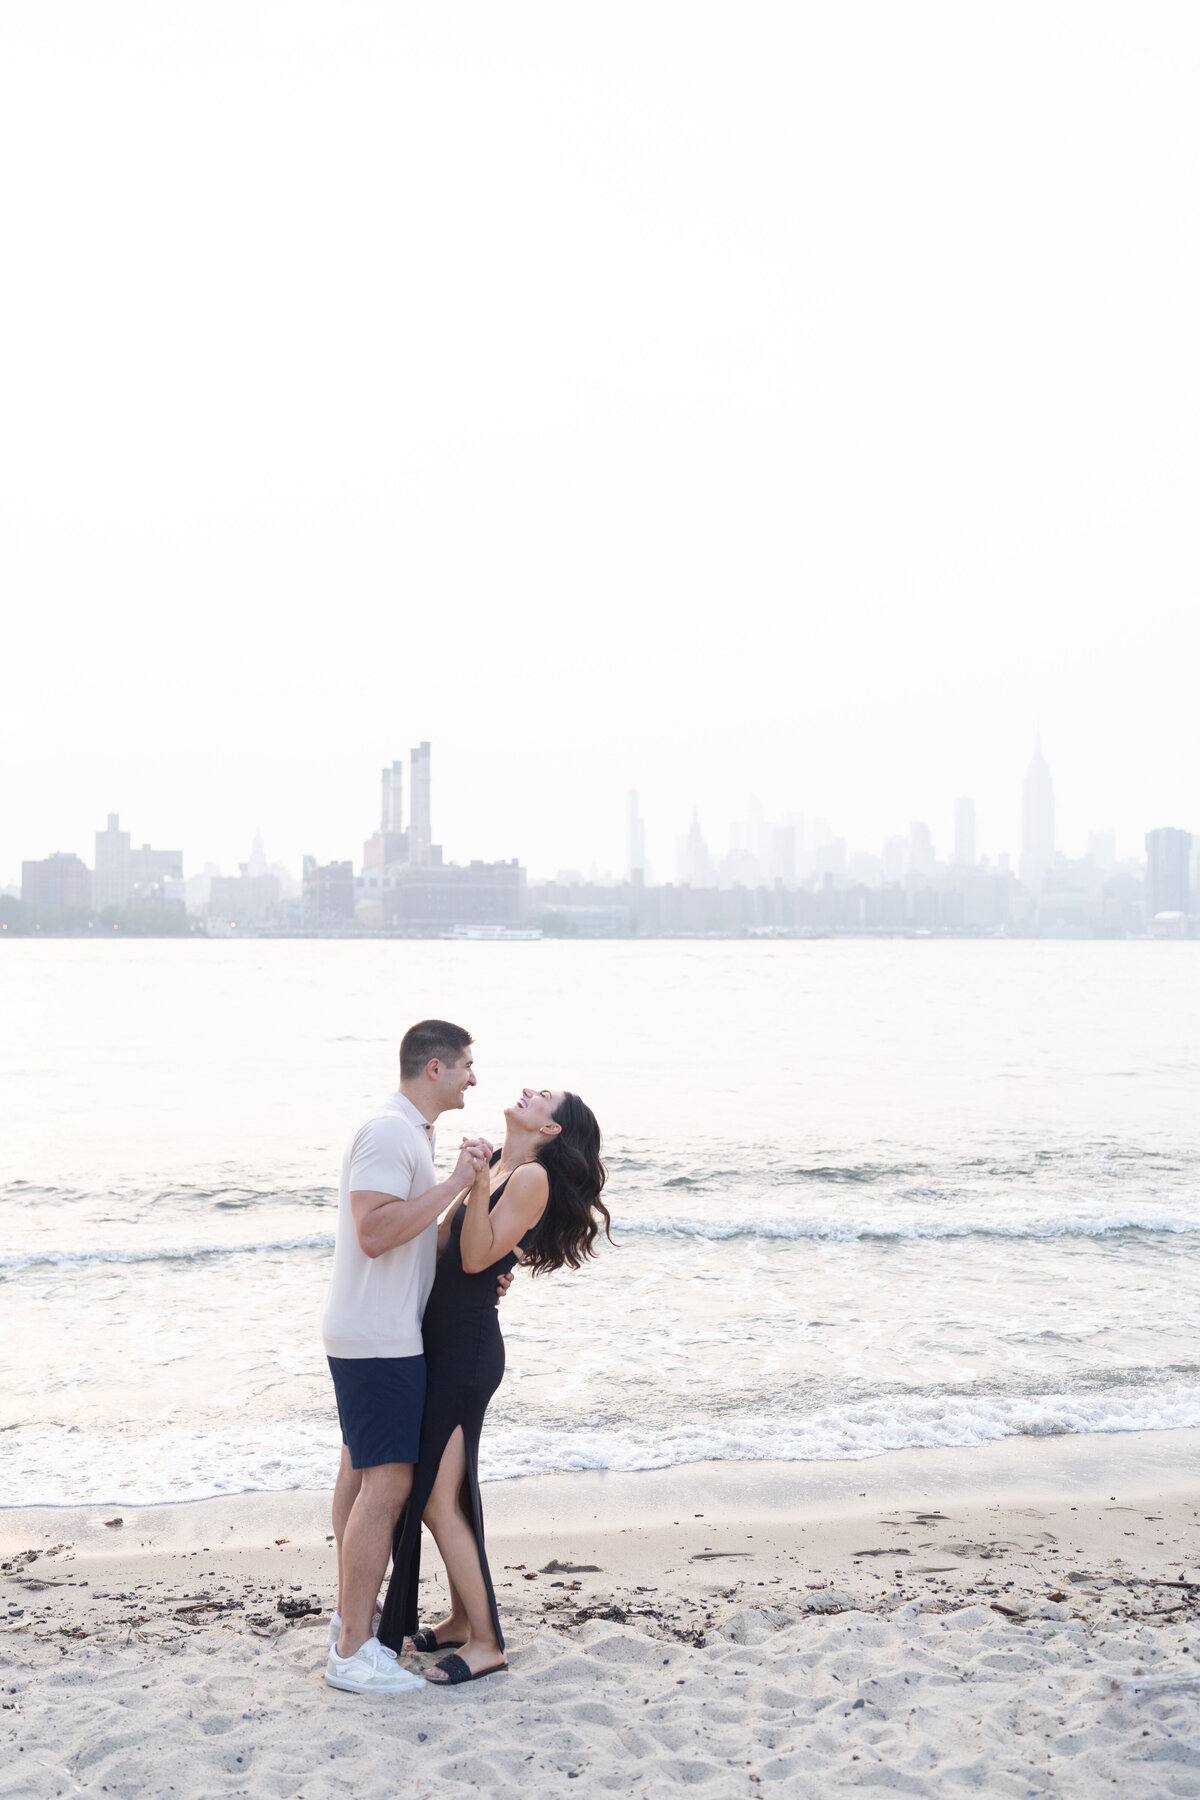 Amanda Gomez Photography - East Coast Proposal & Engagement Photographer - 26